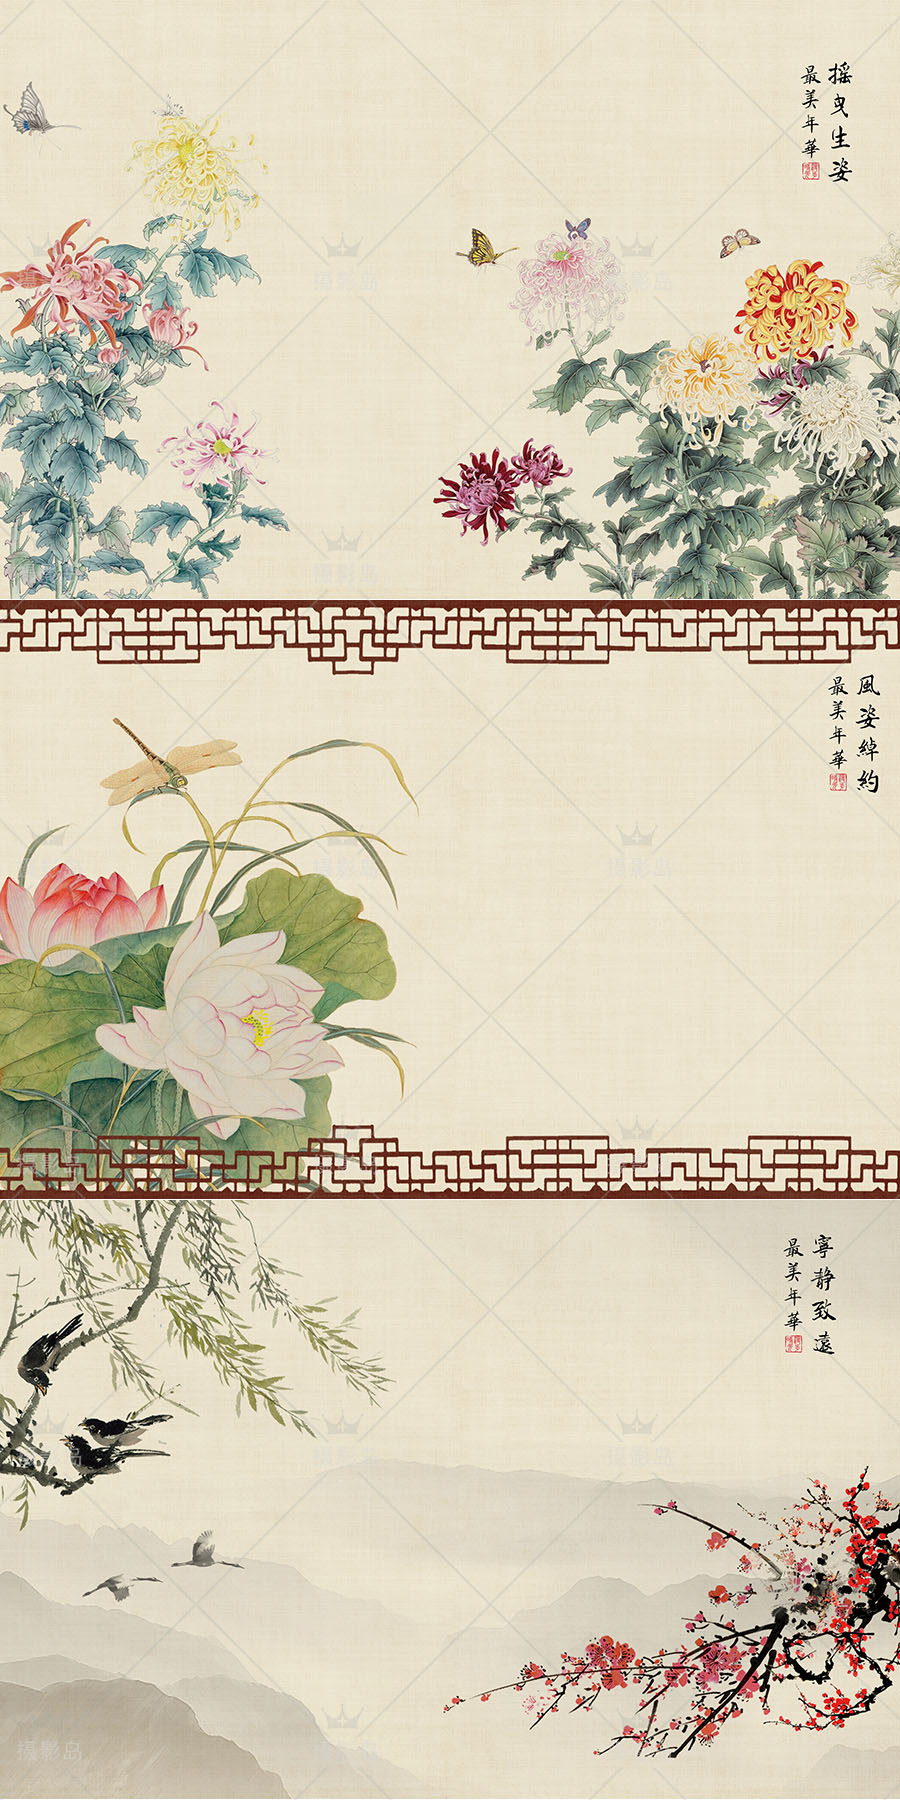 中国民国古装工笔画PSD合成背景模板，国画、山水墨画、风景、花鸟、荷花、禅意等素材